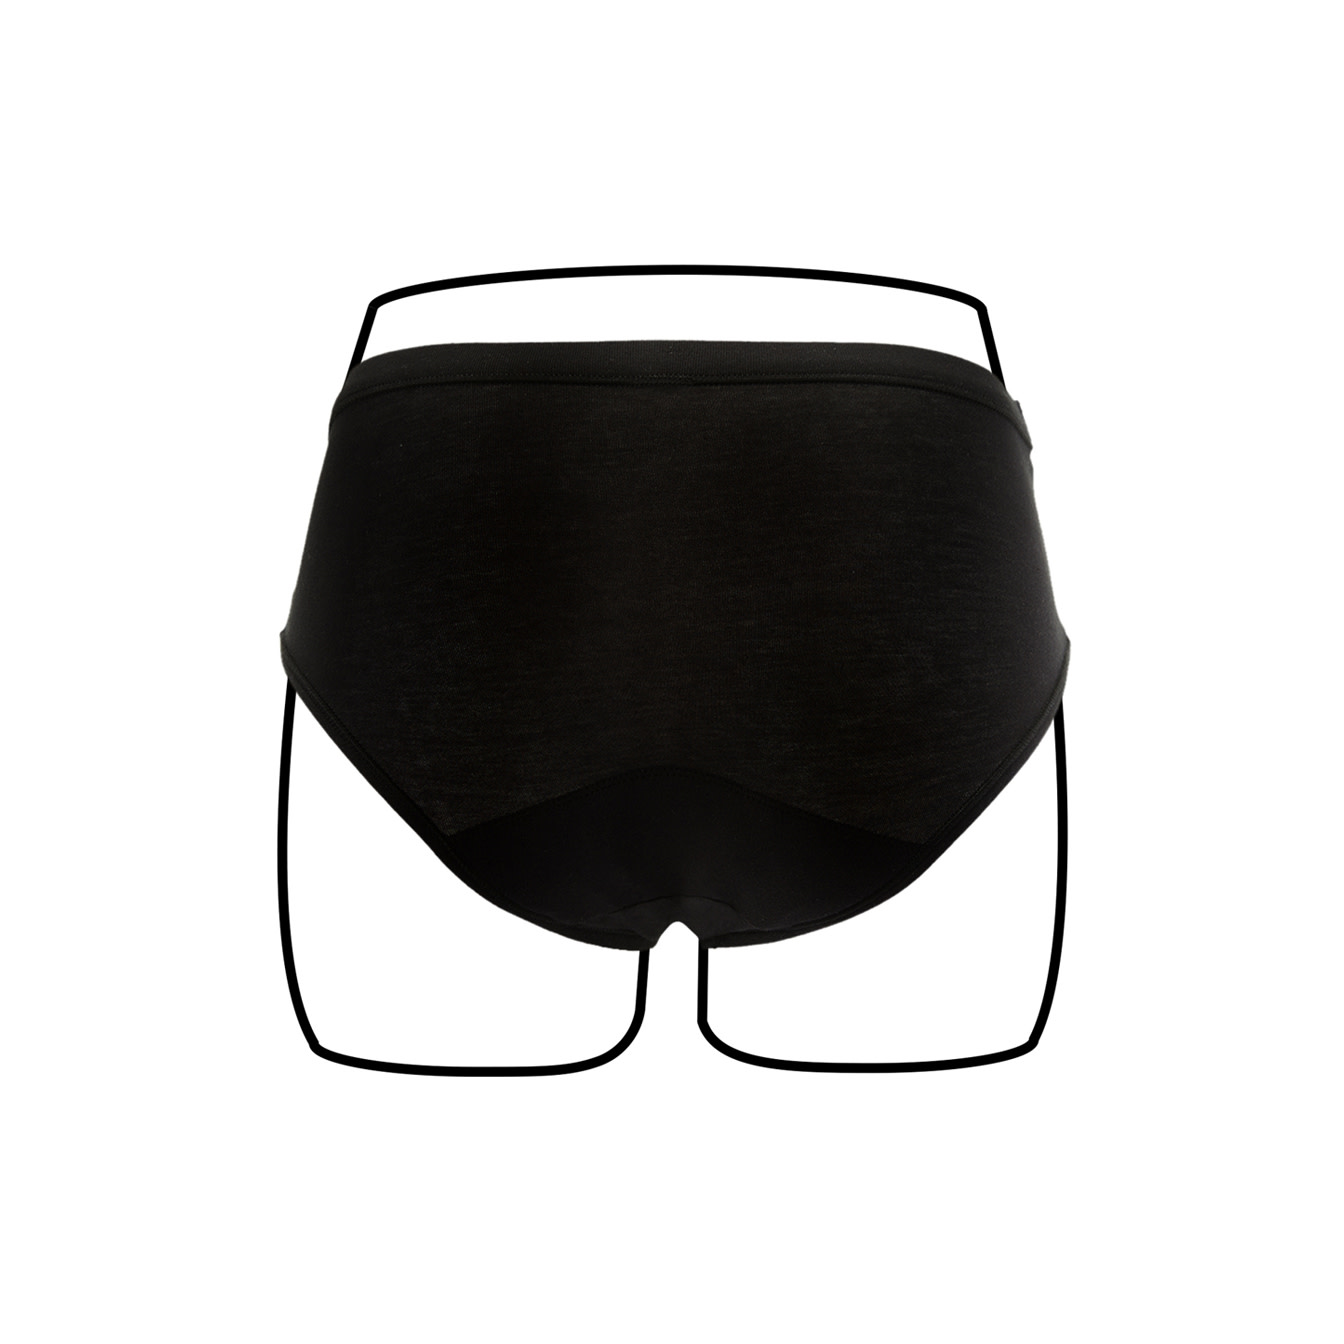 Thinx BTWN Teen Period Underwear - Fresh Start Period Kit for Teen Girls  Multi